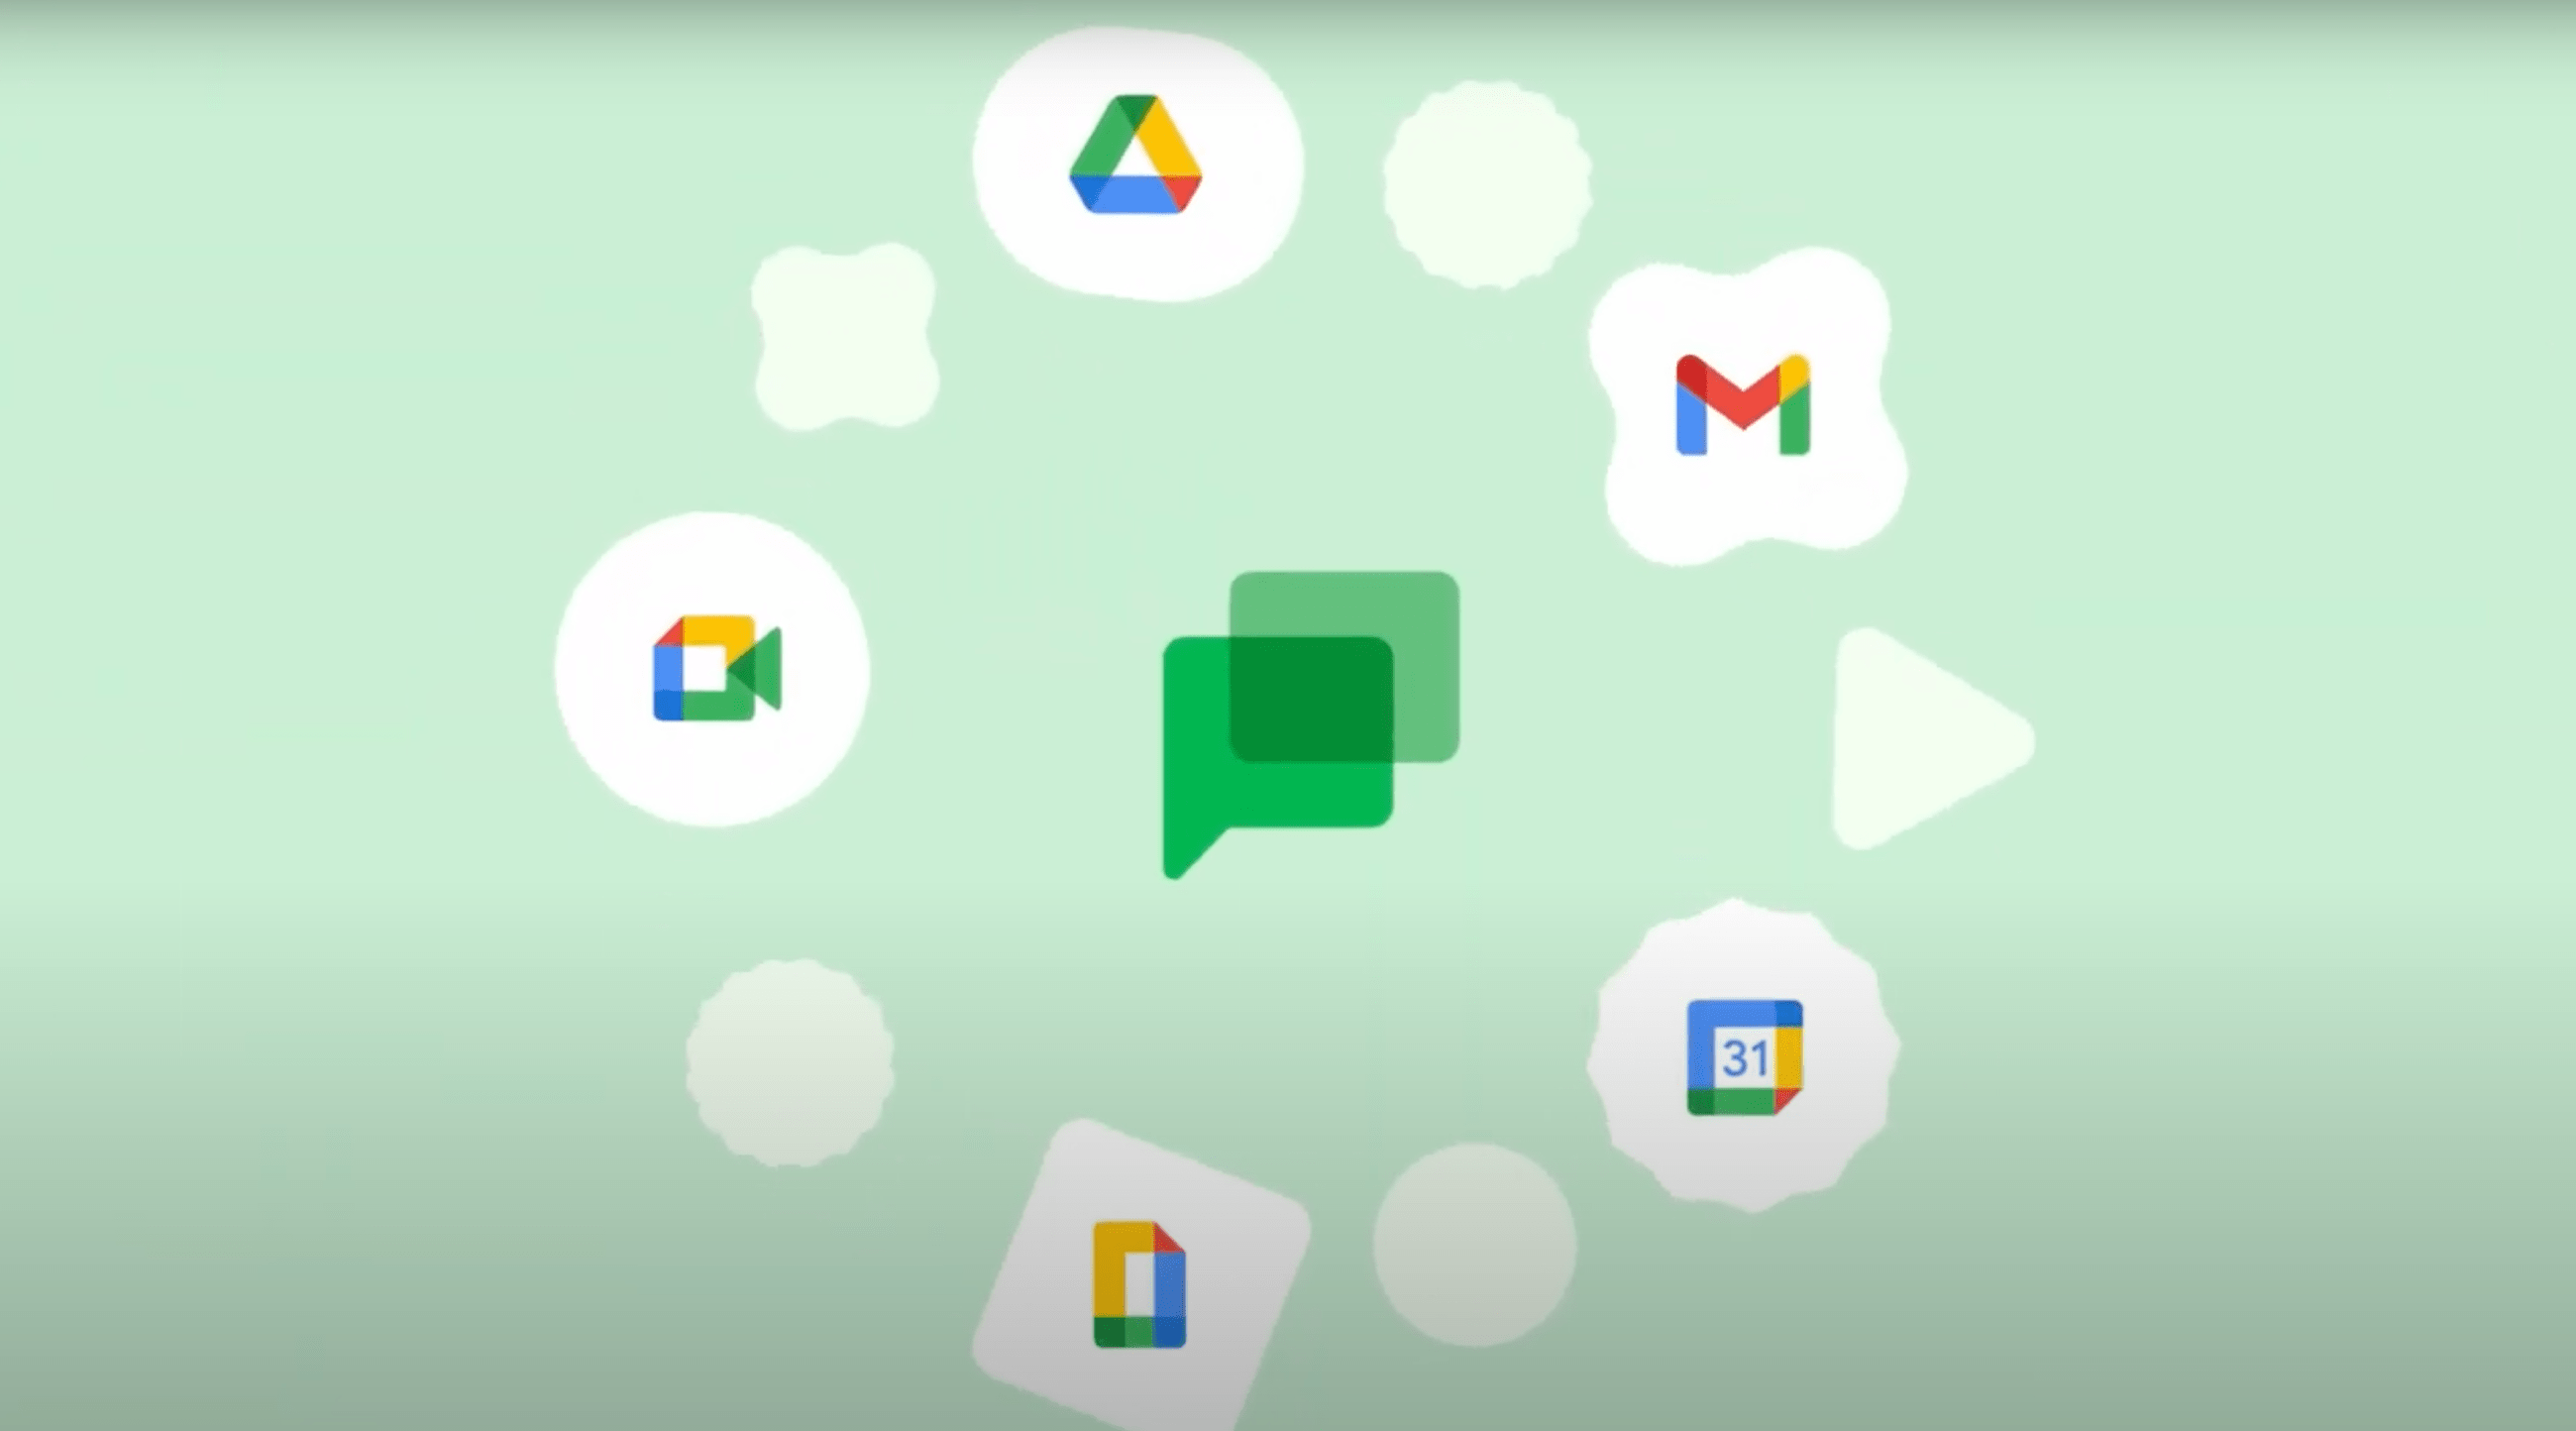 Ikony aplikacji Google Chat, takie jak Dysk Google, Google Meet, Gmail, Google Chat oraz Kalendarz Google, umieszczone na przypominających chmury kształtach na zielonkawym tle.